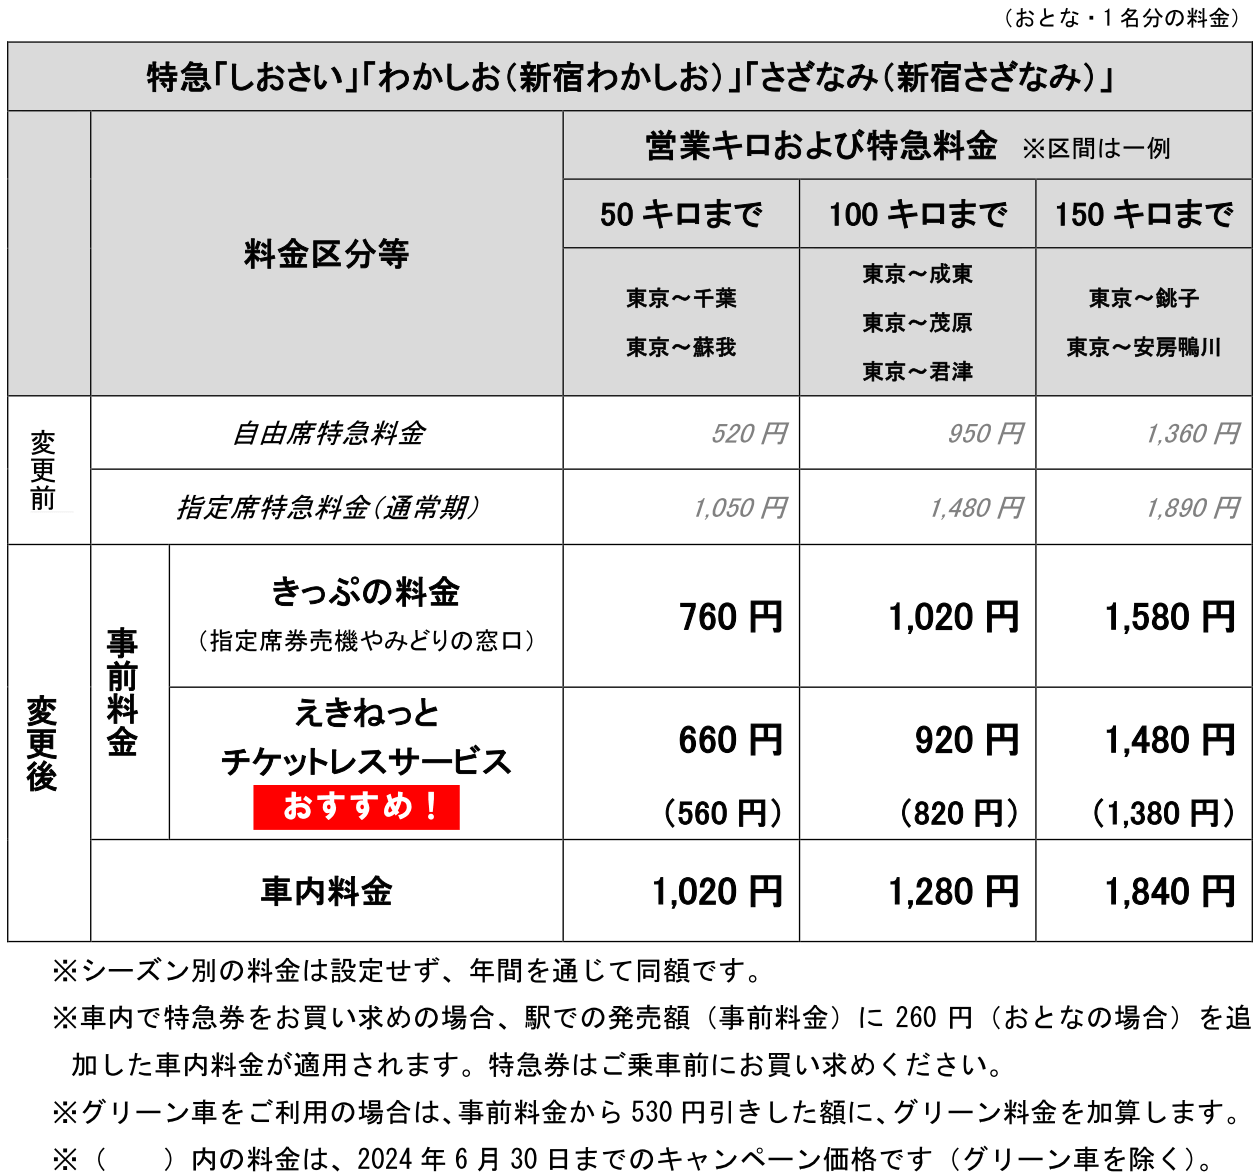 JR東日本房総特急新料金表